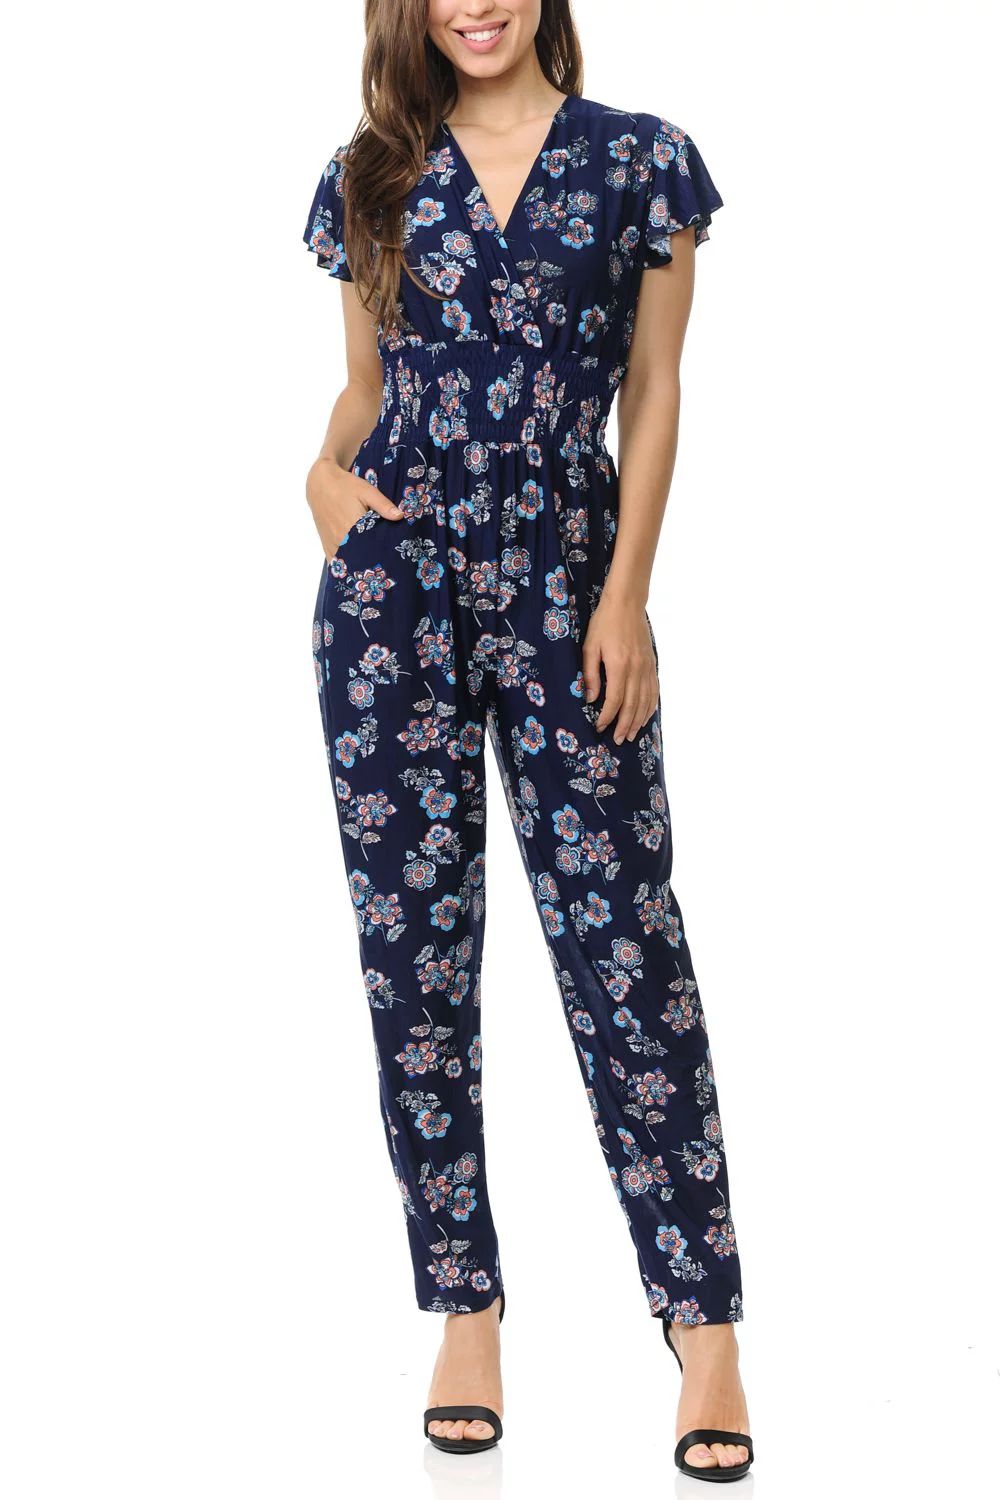 Auliné Collection Womens Short Cap Sleeve V-Neck Long Pants Romper Jumpsuit - Color Block Floral... | Walmart (US)